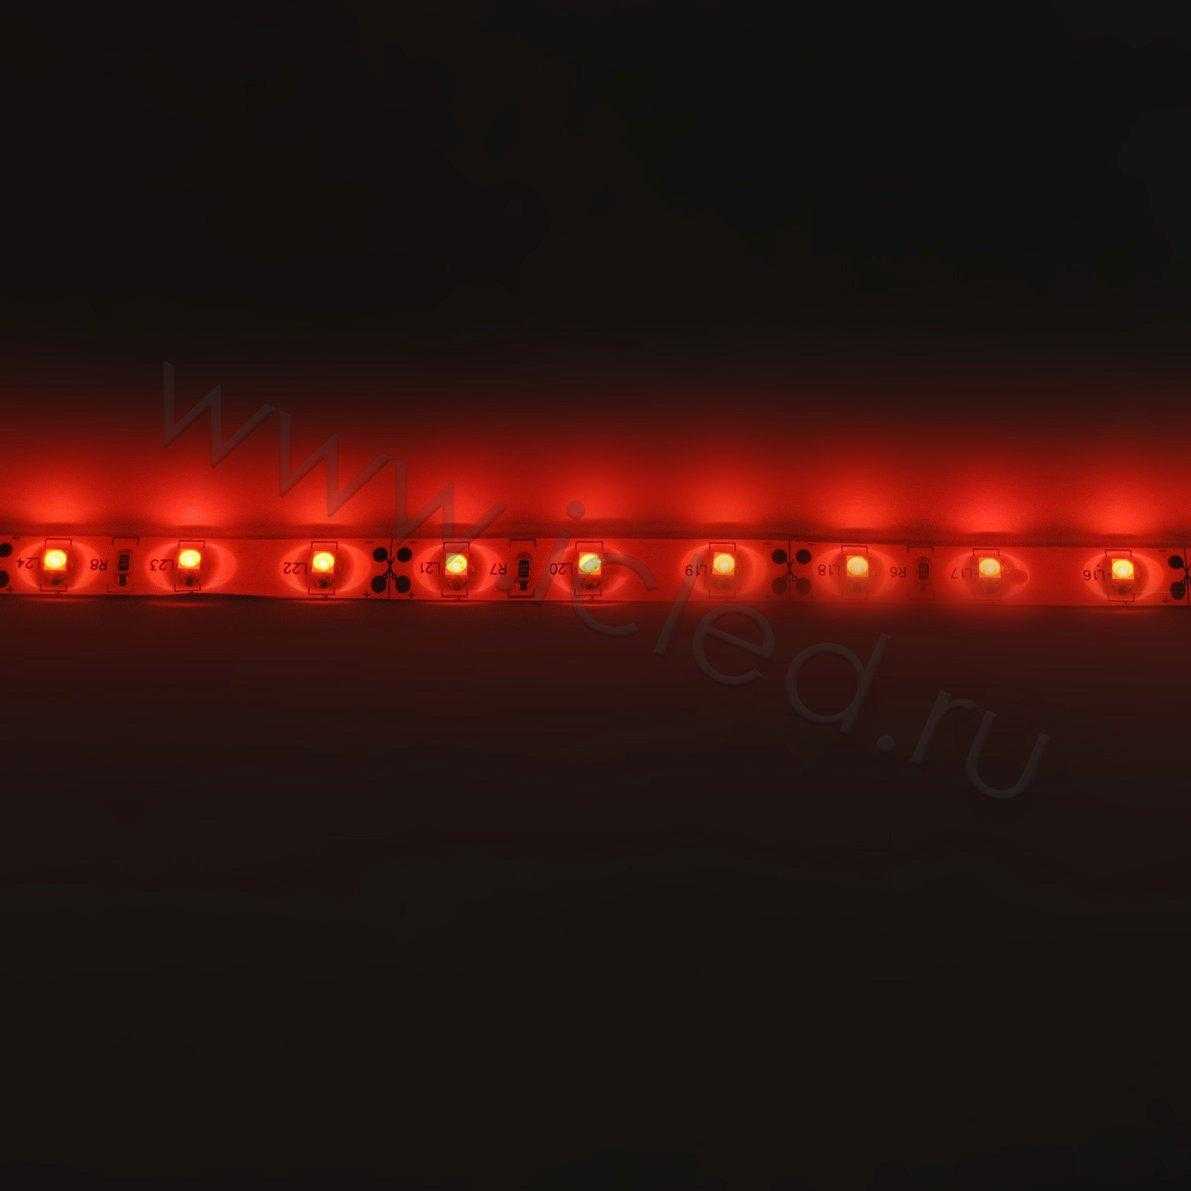 Влагозащищенные светодиодные ленты Светодиодная лента Standart PRO class, 3528, 60 led/m, Red, 12V, IP65 Icled